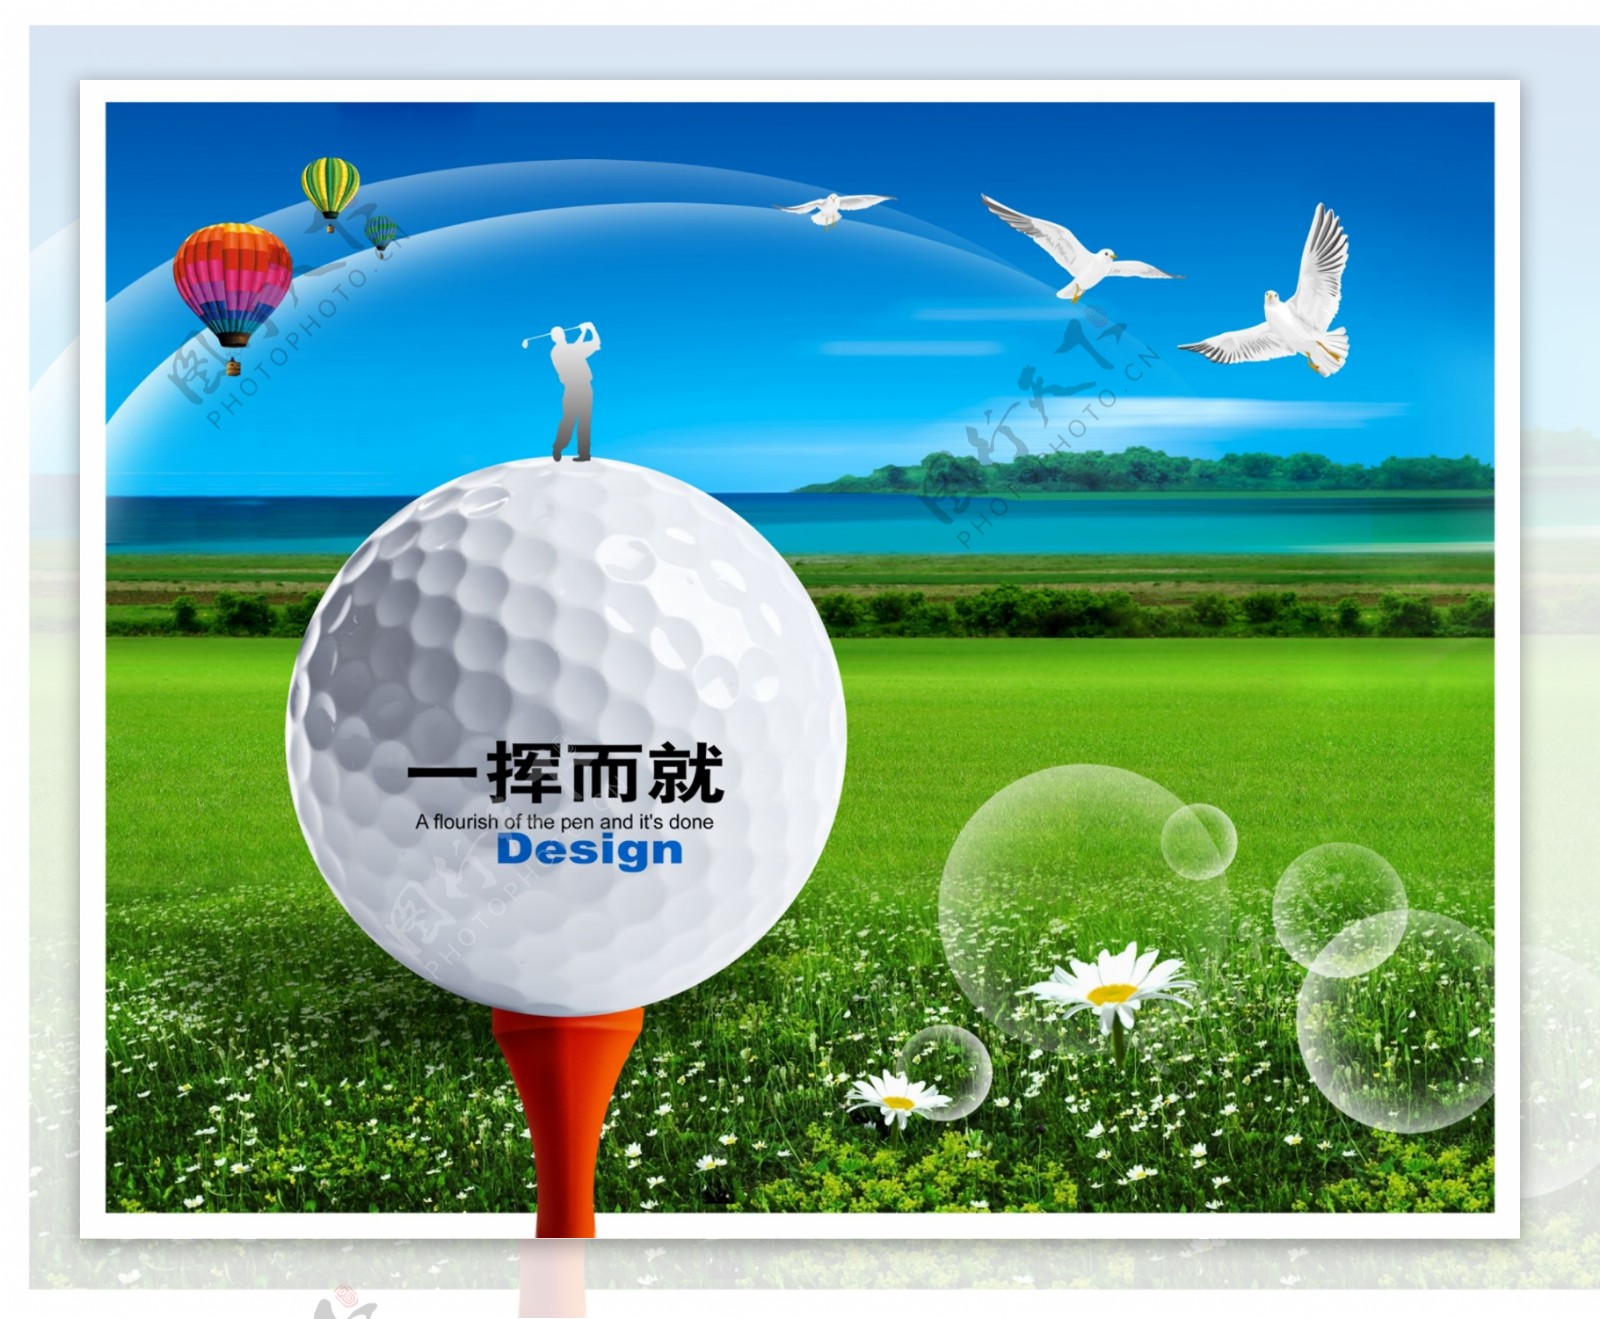 高尔夫球场设计广告PSD素材